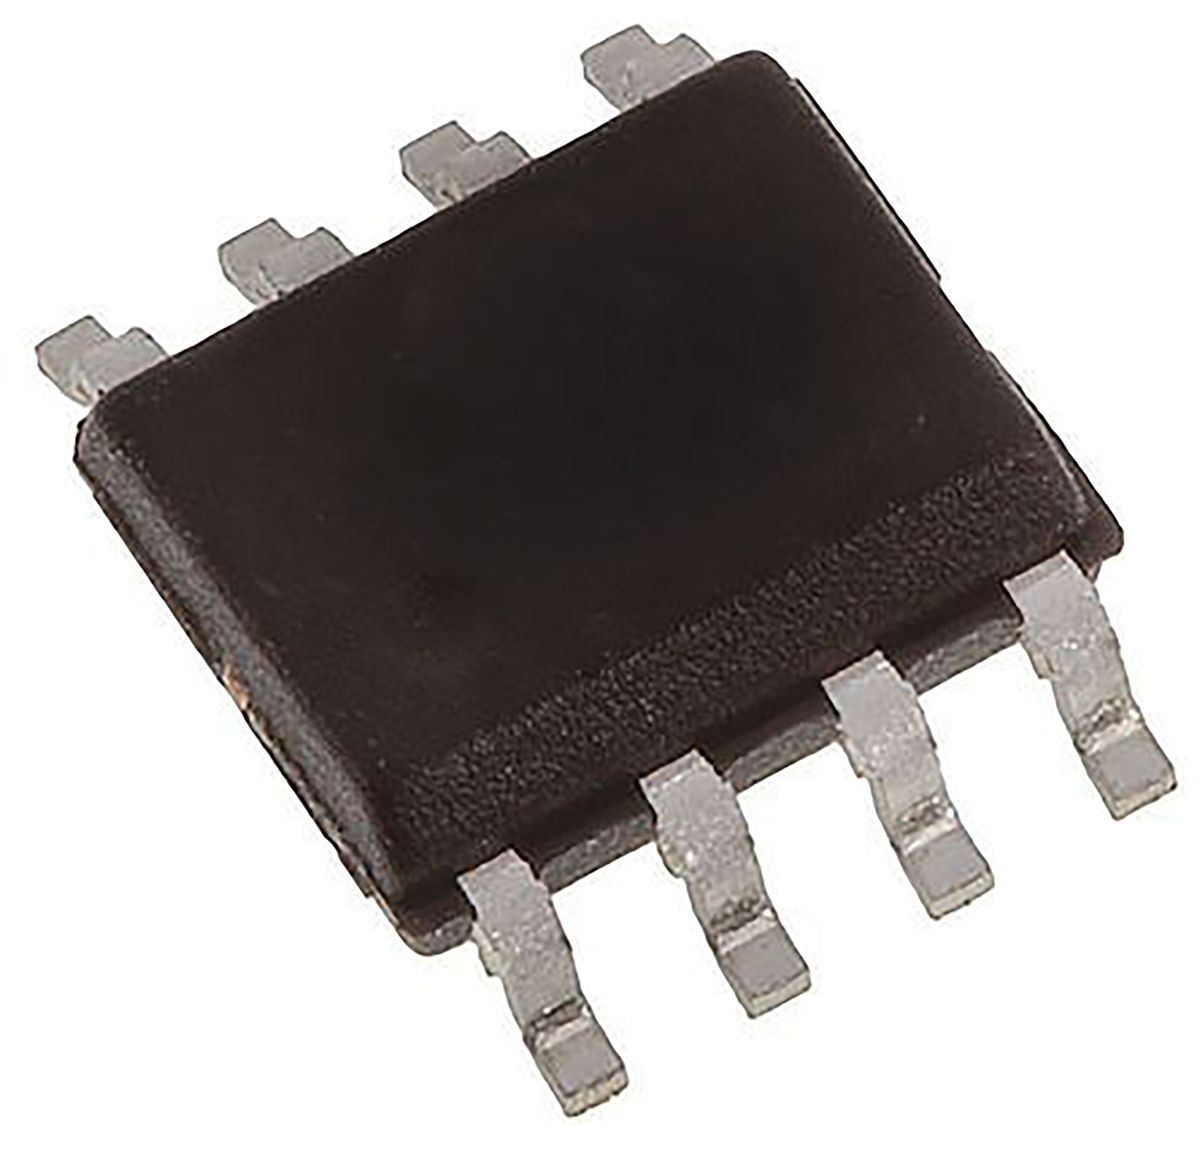 Microchip 256kbit EEPROM-Speicher, Seriell (2-Draht, I2C) Interface, SOIC, 900ns SMD 32K x 8 bit, 32K x 8-Pin 8bit